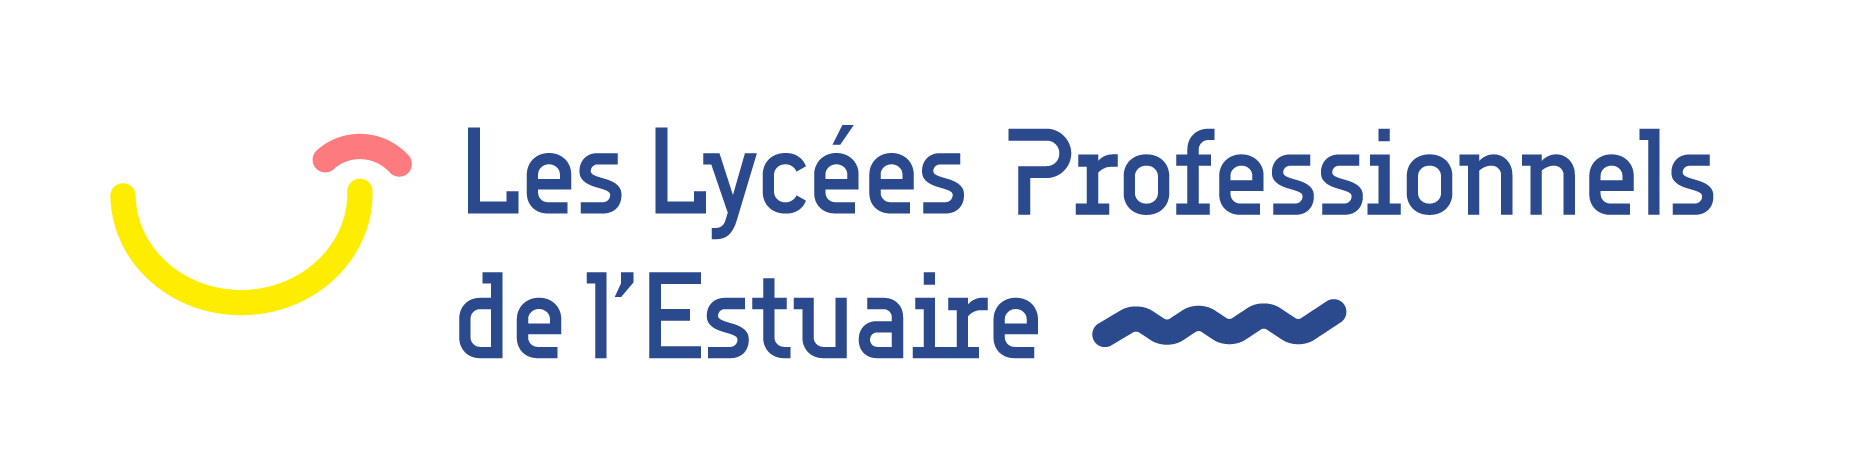 6-lycees-professionnels-estuaire-loire-atlantique-bassin-saint-nazaire-2